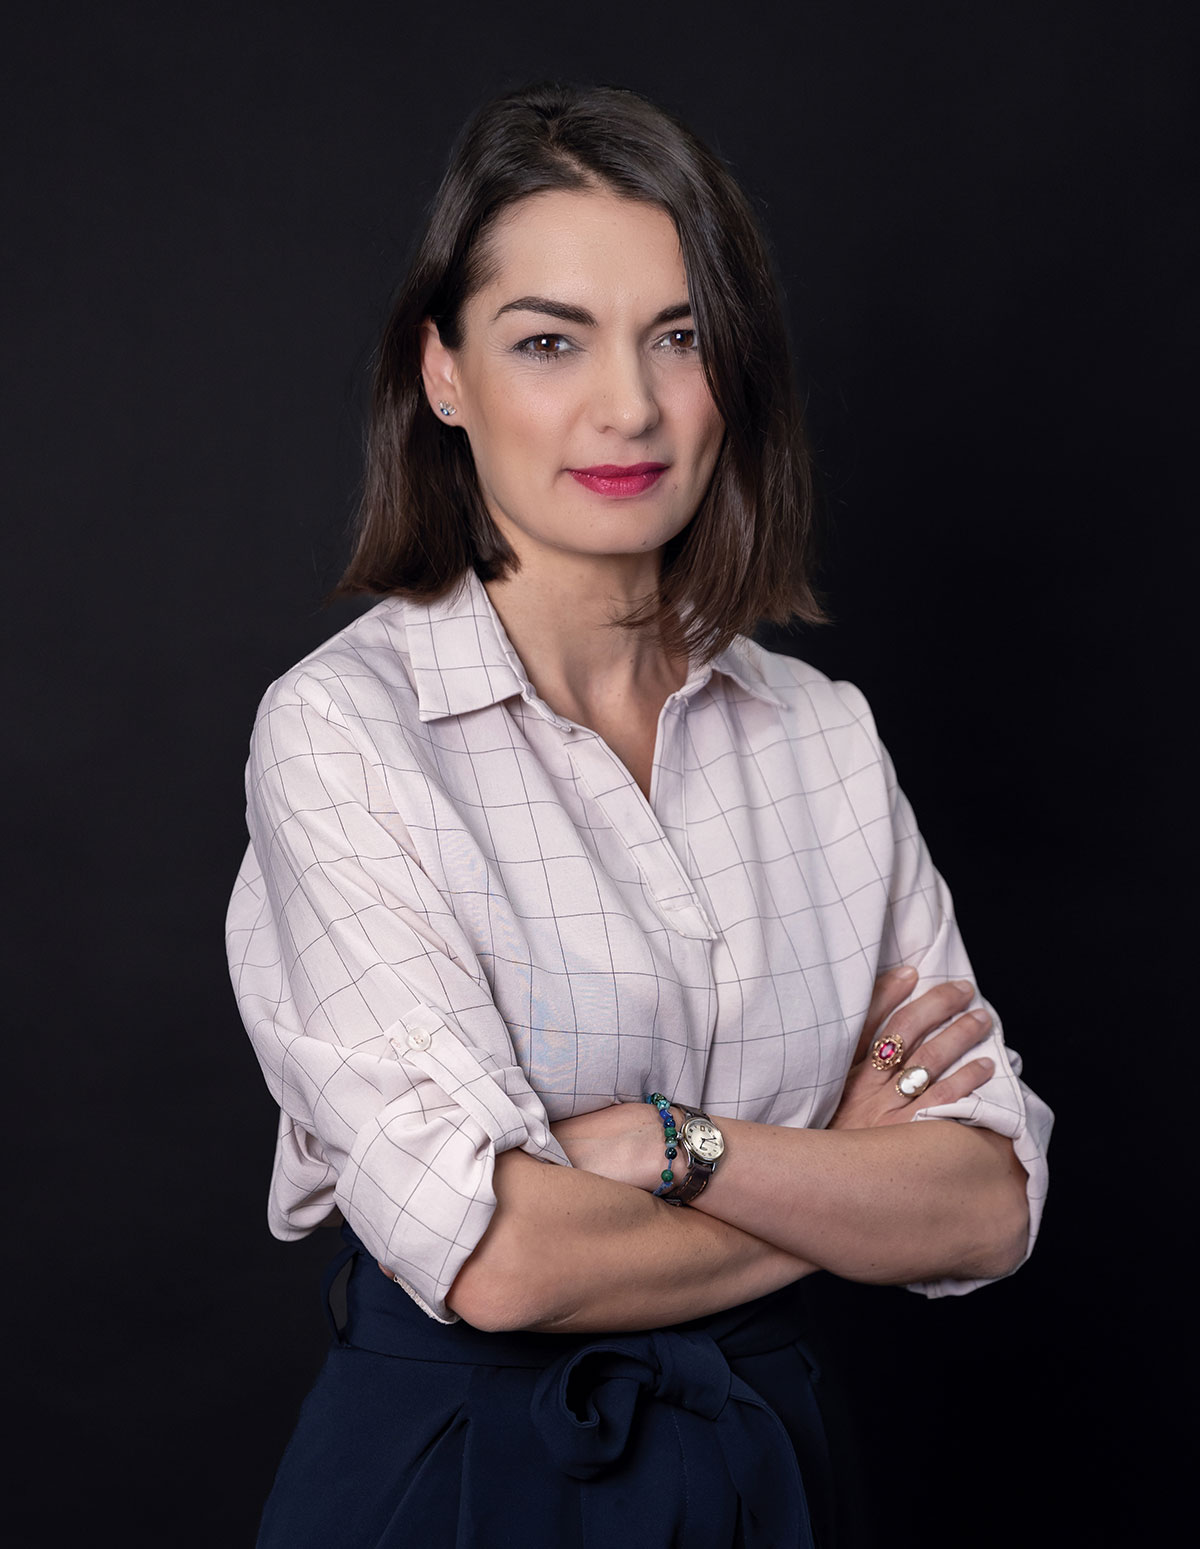 Ms. Victoria Leonidou